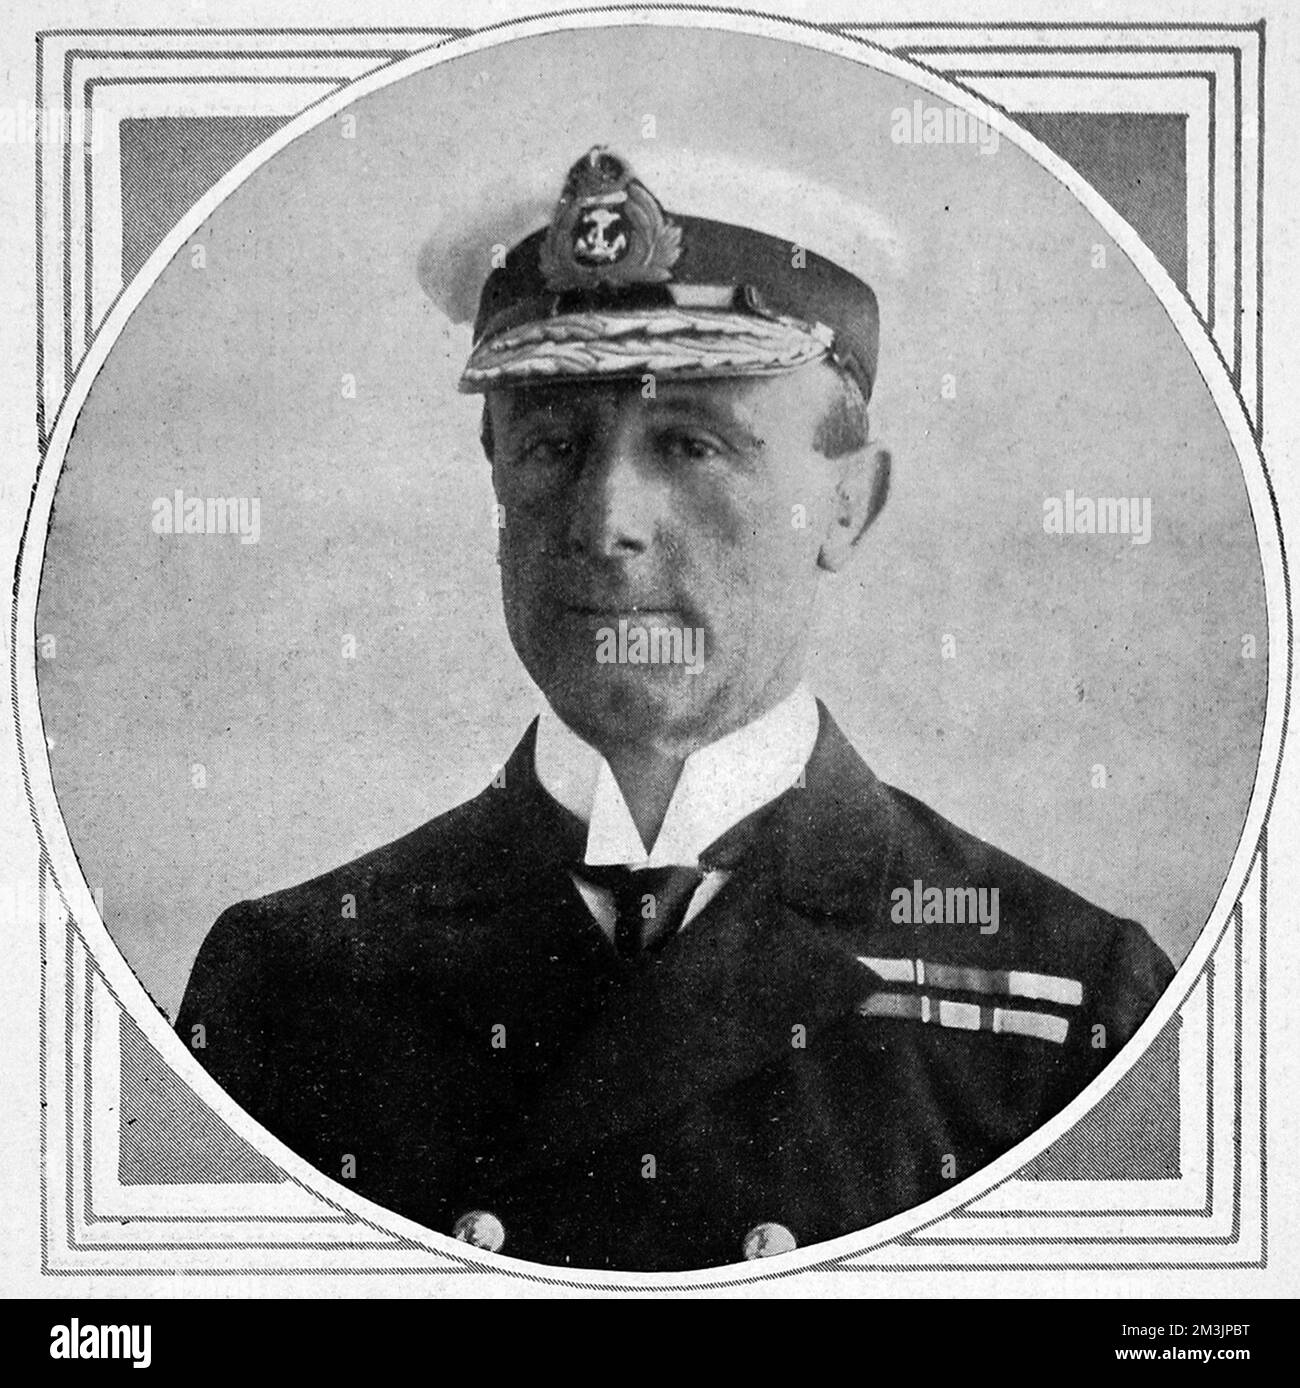 L'ammiraglio John R. Jelicoe (1859 - 1935), comandante supremo delle flotte britanniche nel 1914. Anche se criticato al tempo della battaglia dello Jutland per non aver sconfitto categoricamente la marina tedesca, Jelicoe riuscì a neutralizzare la minaccia tedesca per il resto della guerra. Divenne 1st Sea Lord dell'Ammiragliato nel 1916, fu promosso ammiraglio della flotta nel 1919 e divenne Governatore della Nuova Zelanda nel 1920. Fu creato Visconte Jelicoe di Scapa nel 1918 in riconoscimento dei suoi servizi durante la prima guerra mondiale Data: 1914 Foto Stock